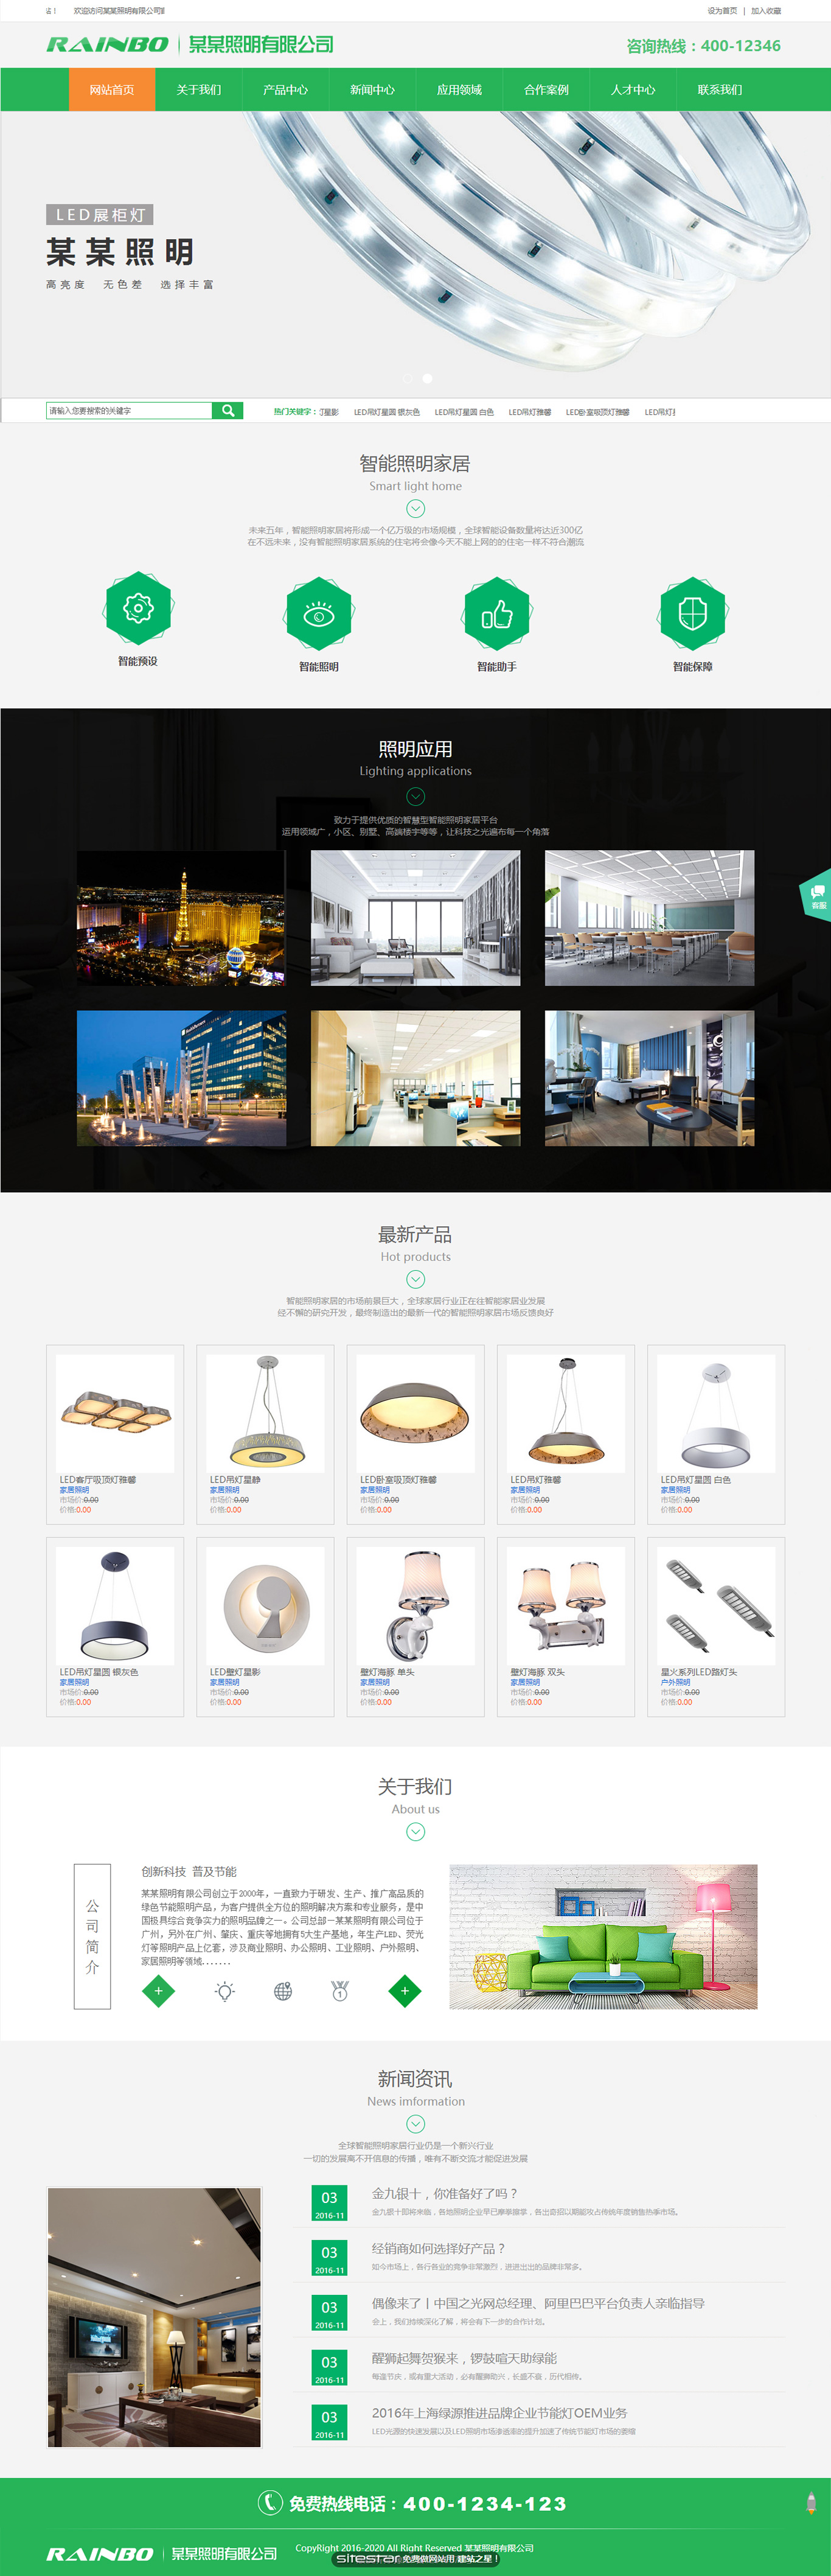 能源、灯具网站模板-energy-68